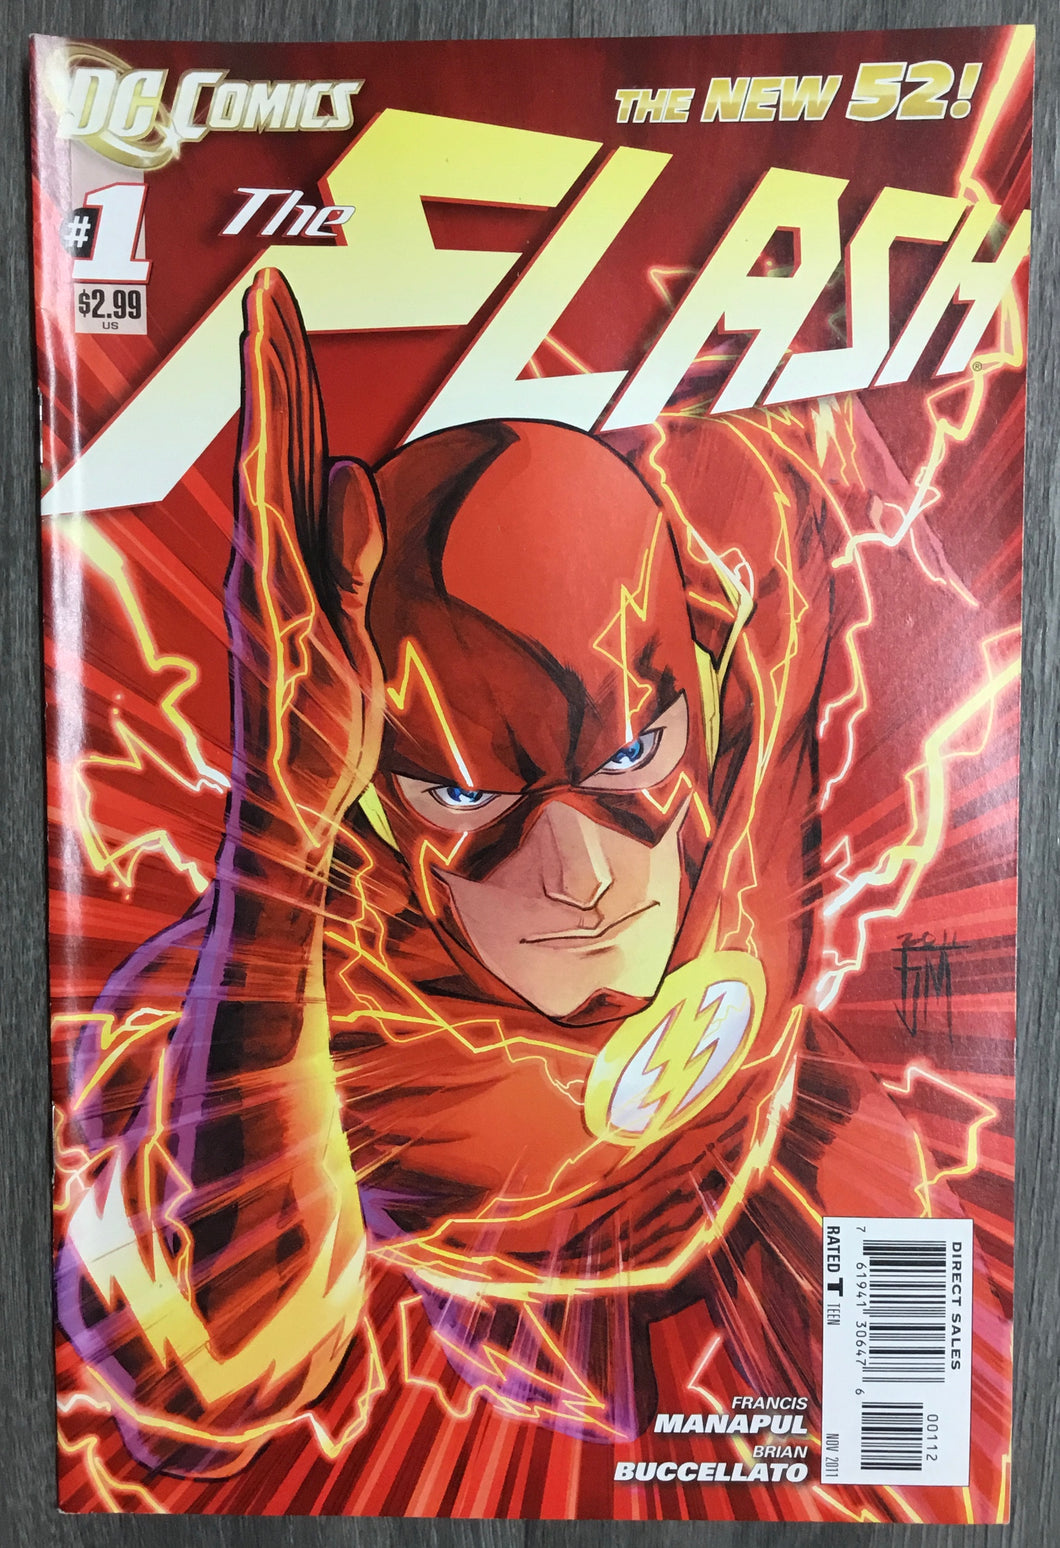 The Flash (New 52) No. #1 2011 DC Comics